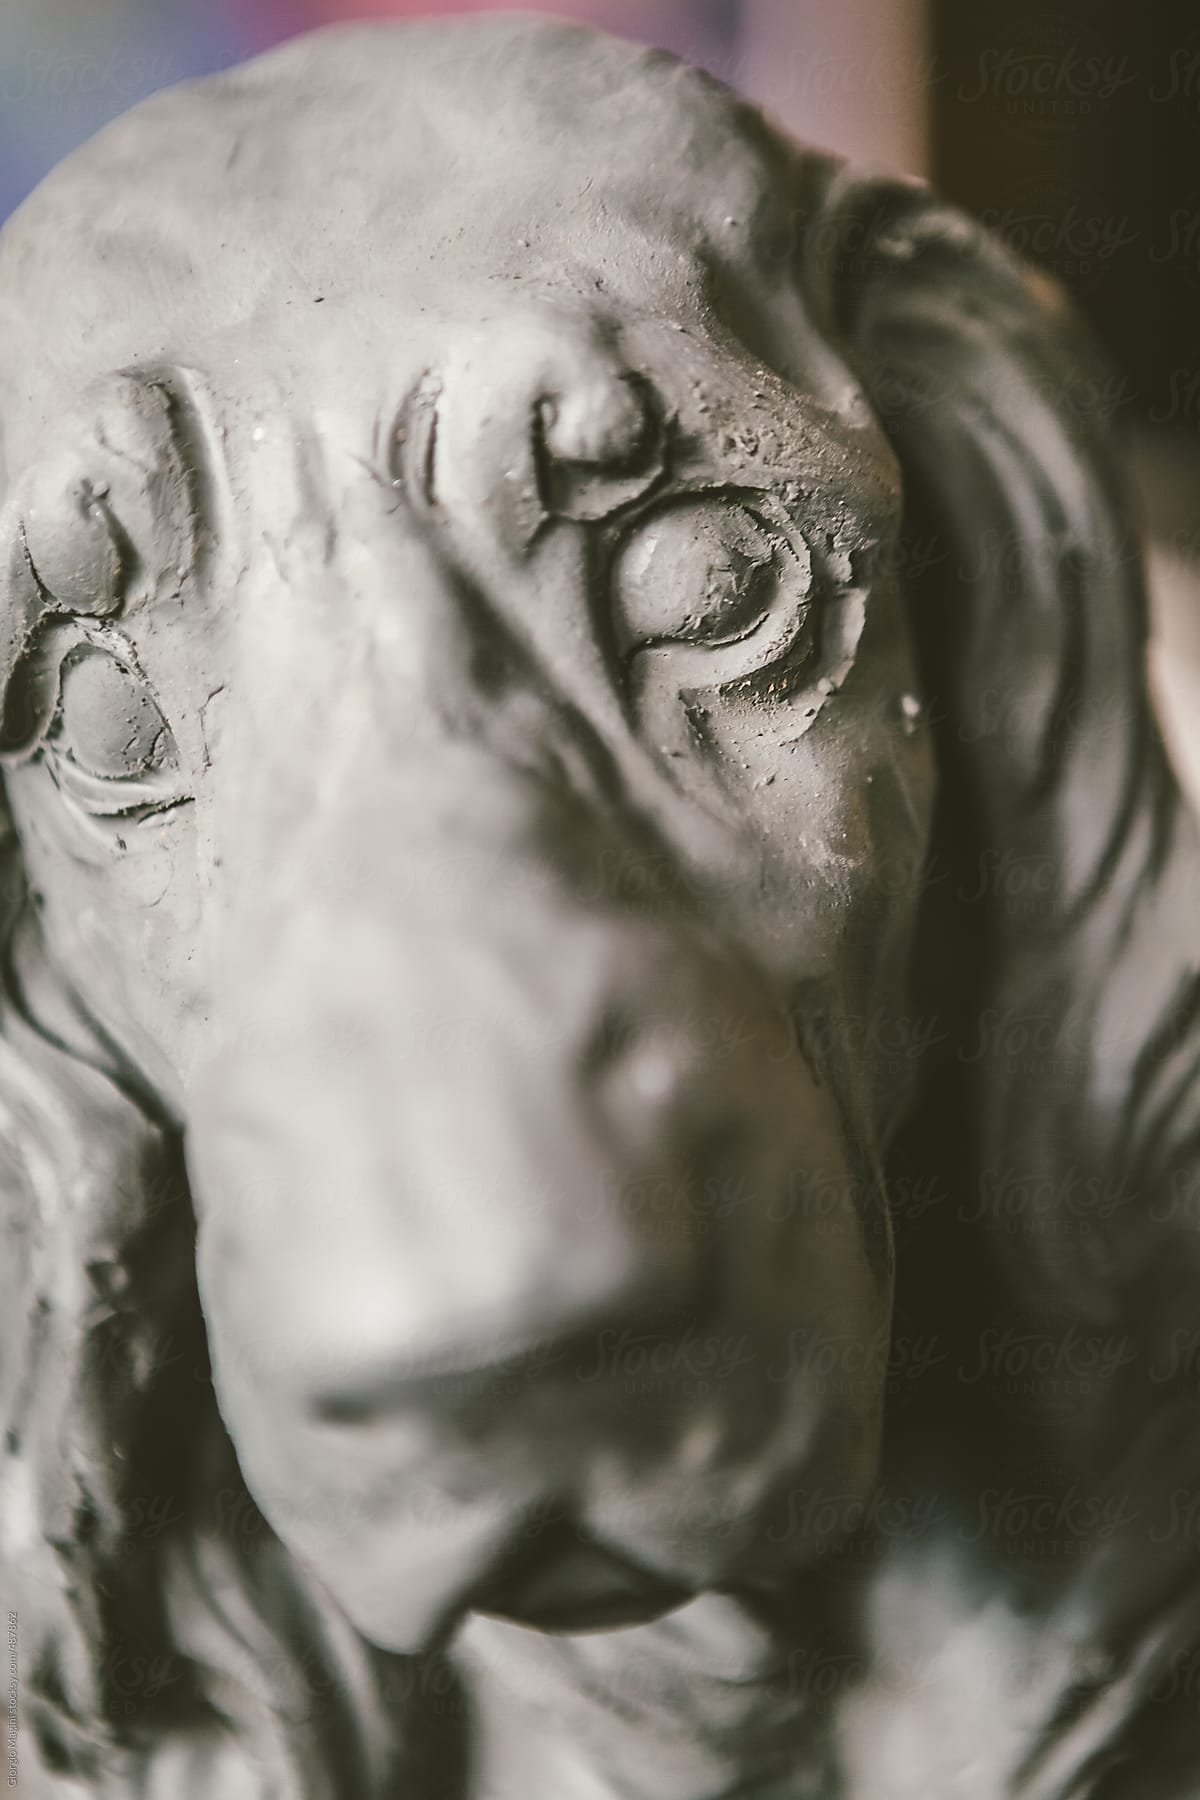 Terracotta Statue of Basset Dog in a Ceramics Studio